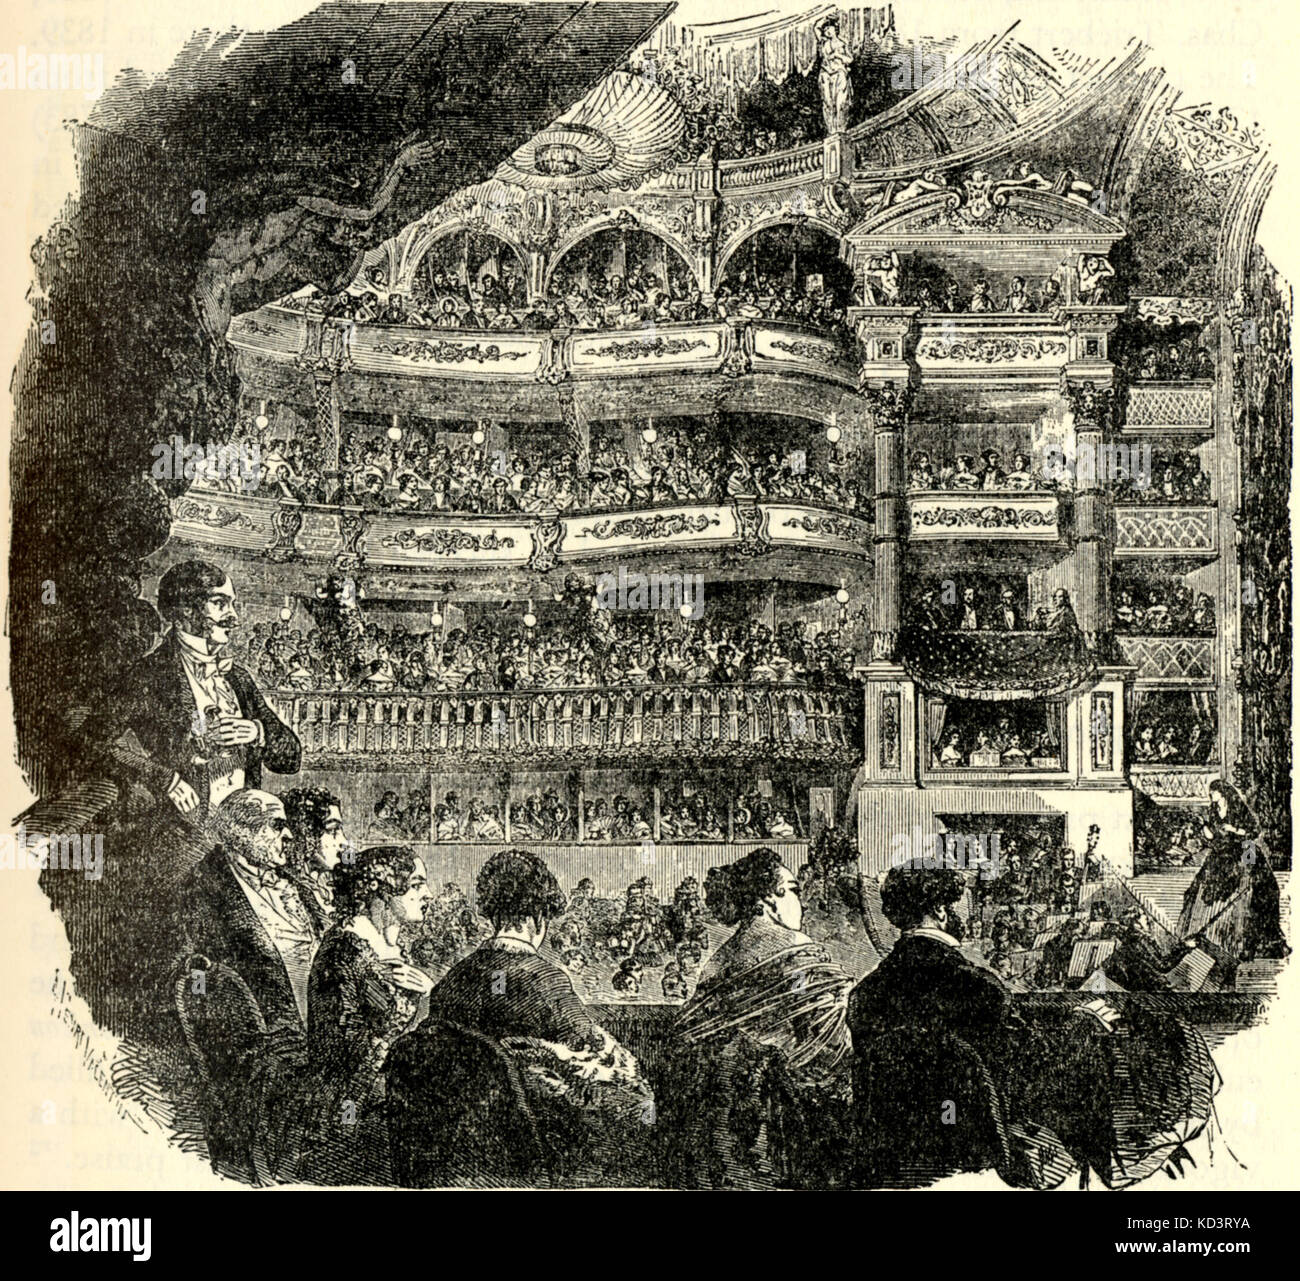 PARIS des 19. Jahrhunderts Leistung bei Salle Ventadour 1850. Publikum dargestellt. Leiter mit Geigenbogen. Stockfoto